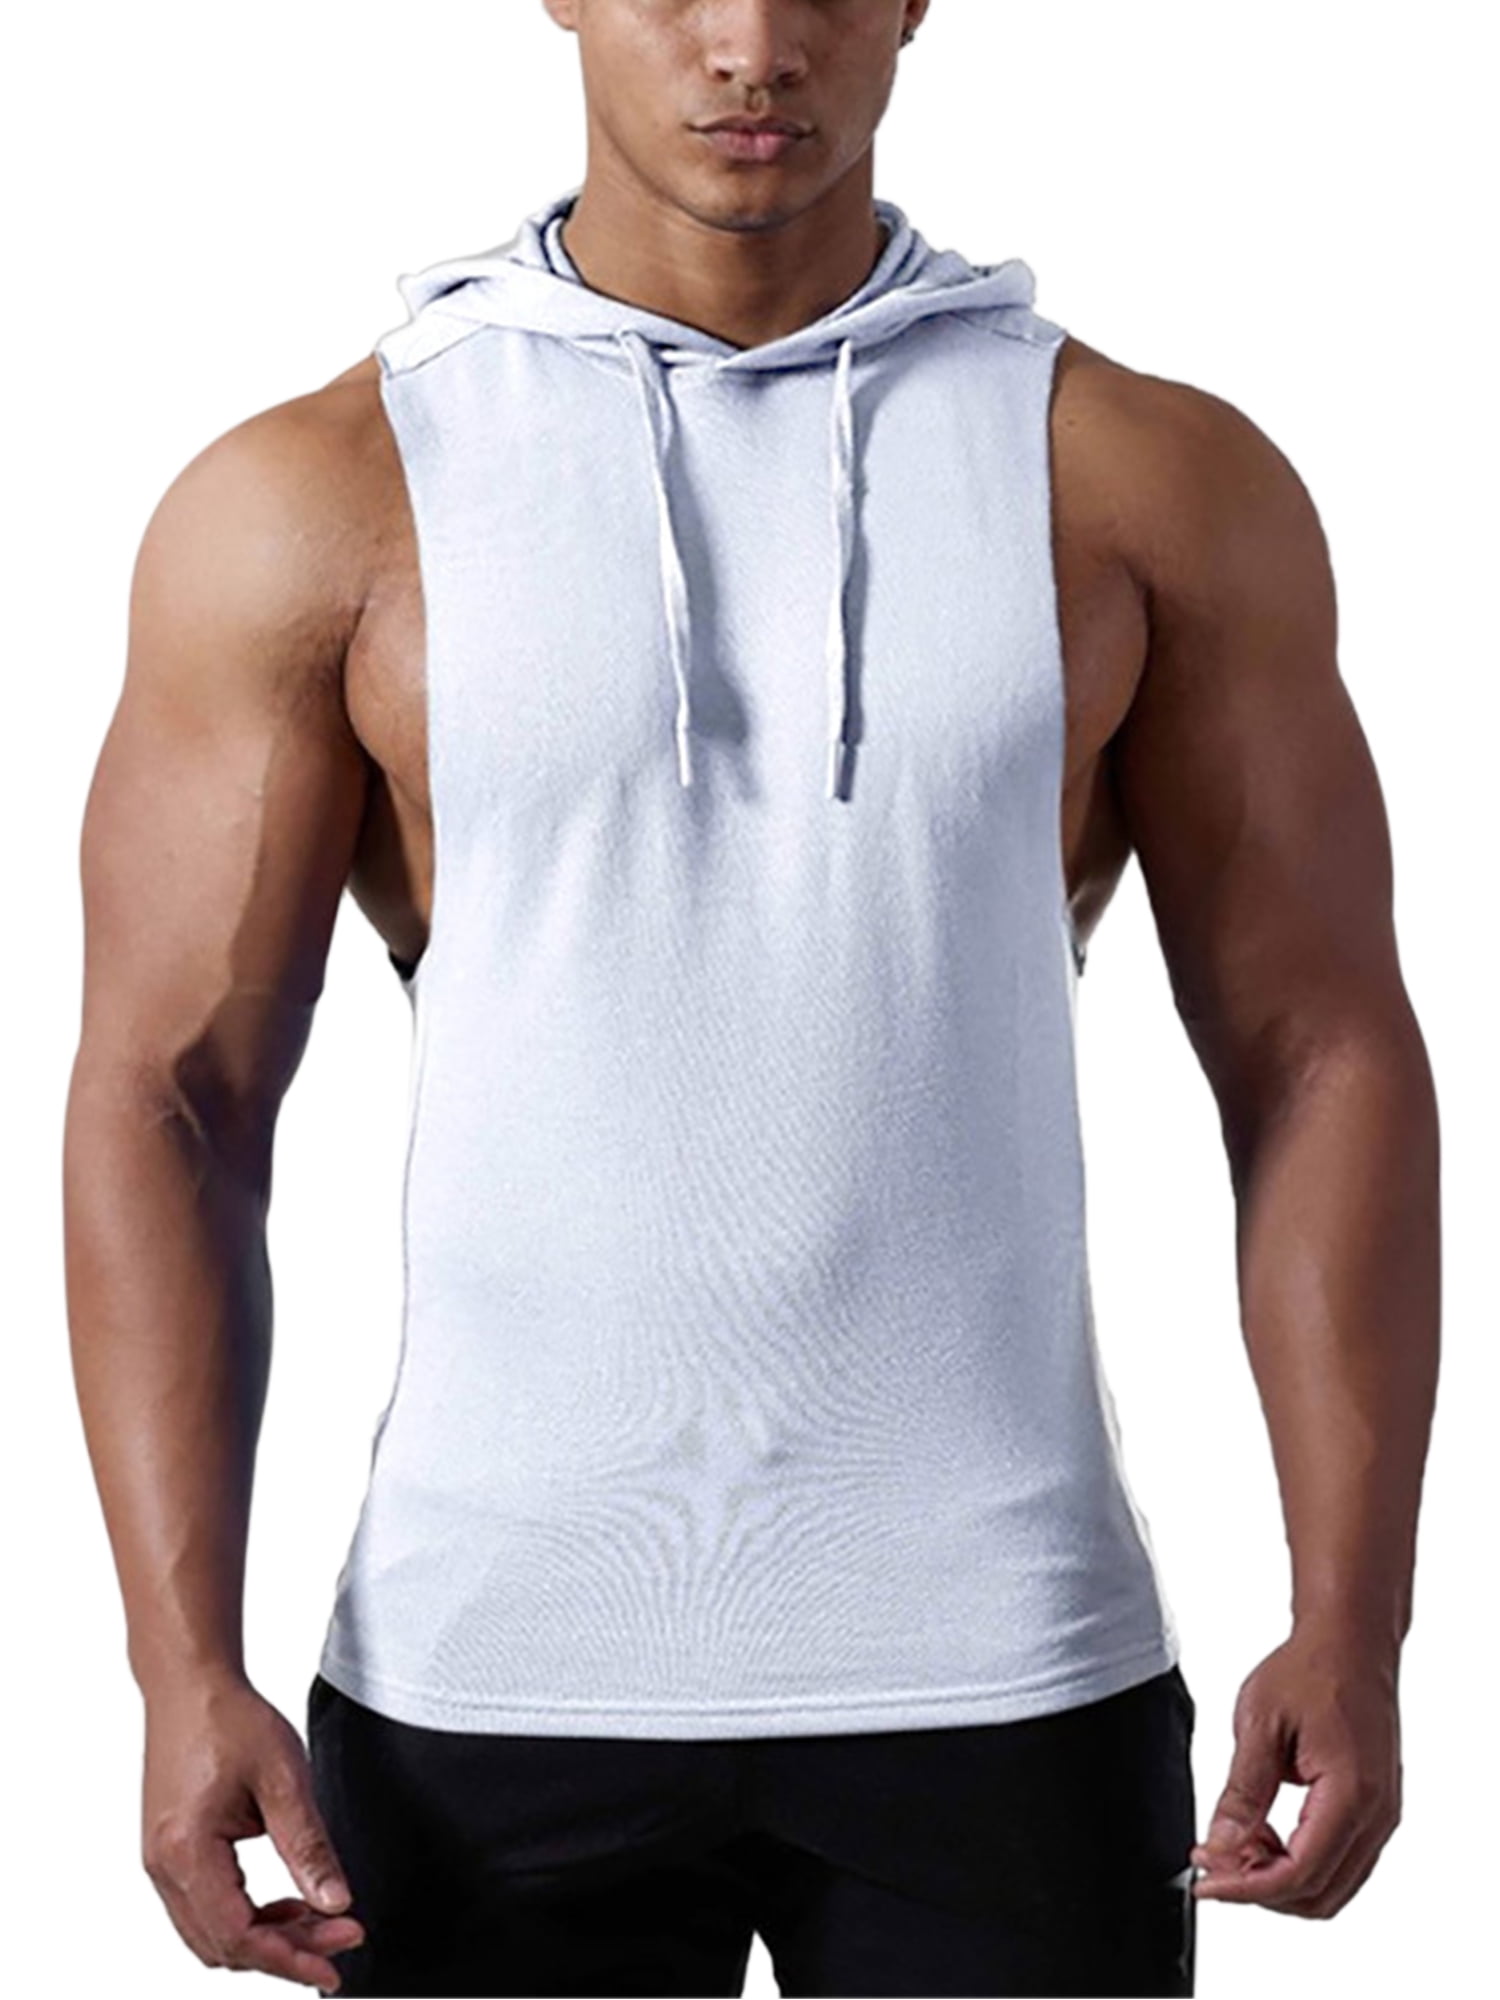 Huichelaar Annoteren inkomen Mens Lightweight Sleeveless Athletic Bodybuilding Tee Shirt Casual Muscle  Cut Off Shirts Gym Workout Tank Tops with Hood - Walmart.com